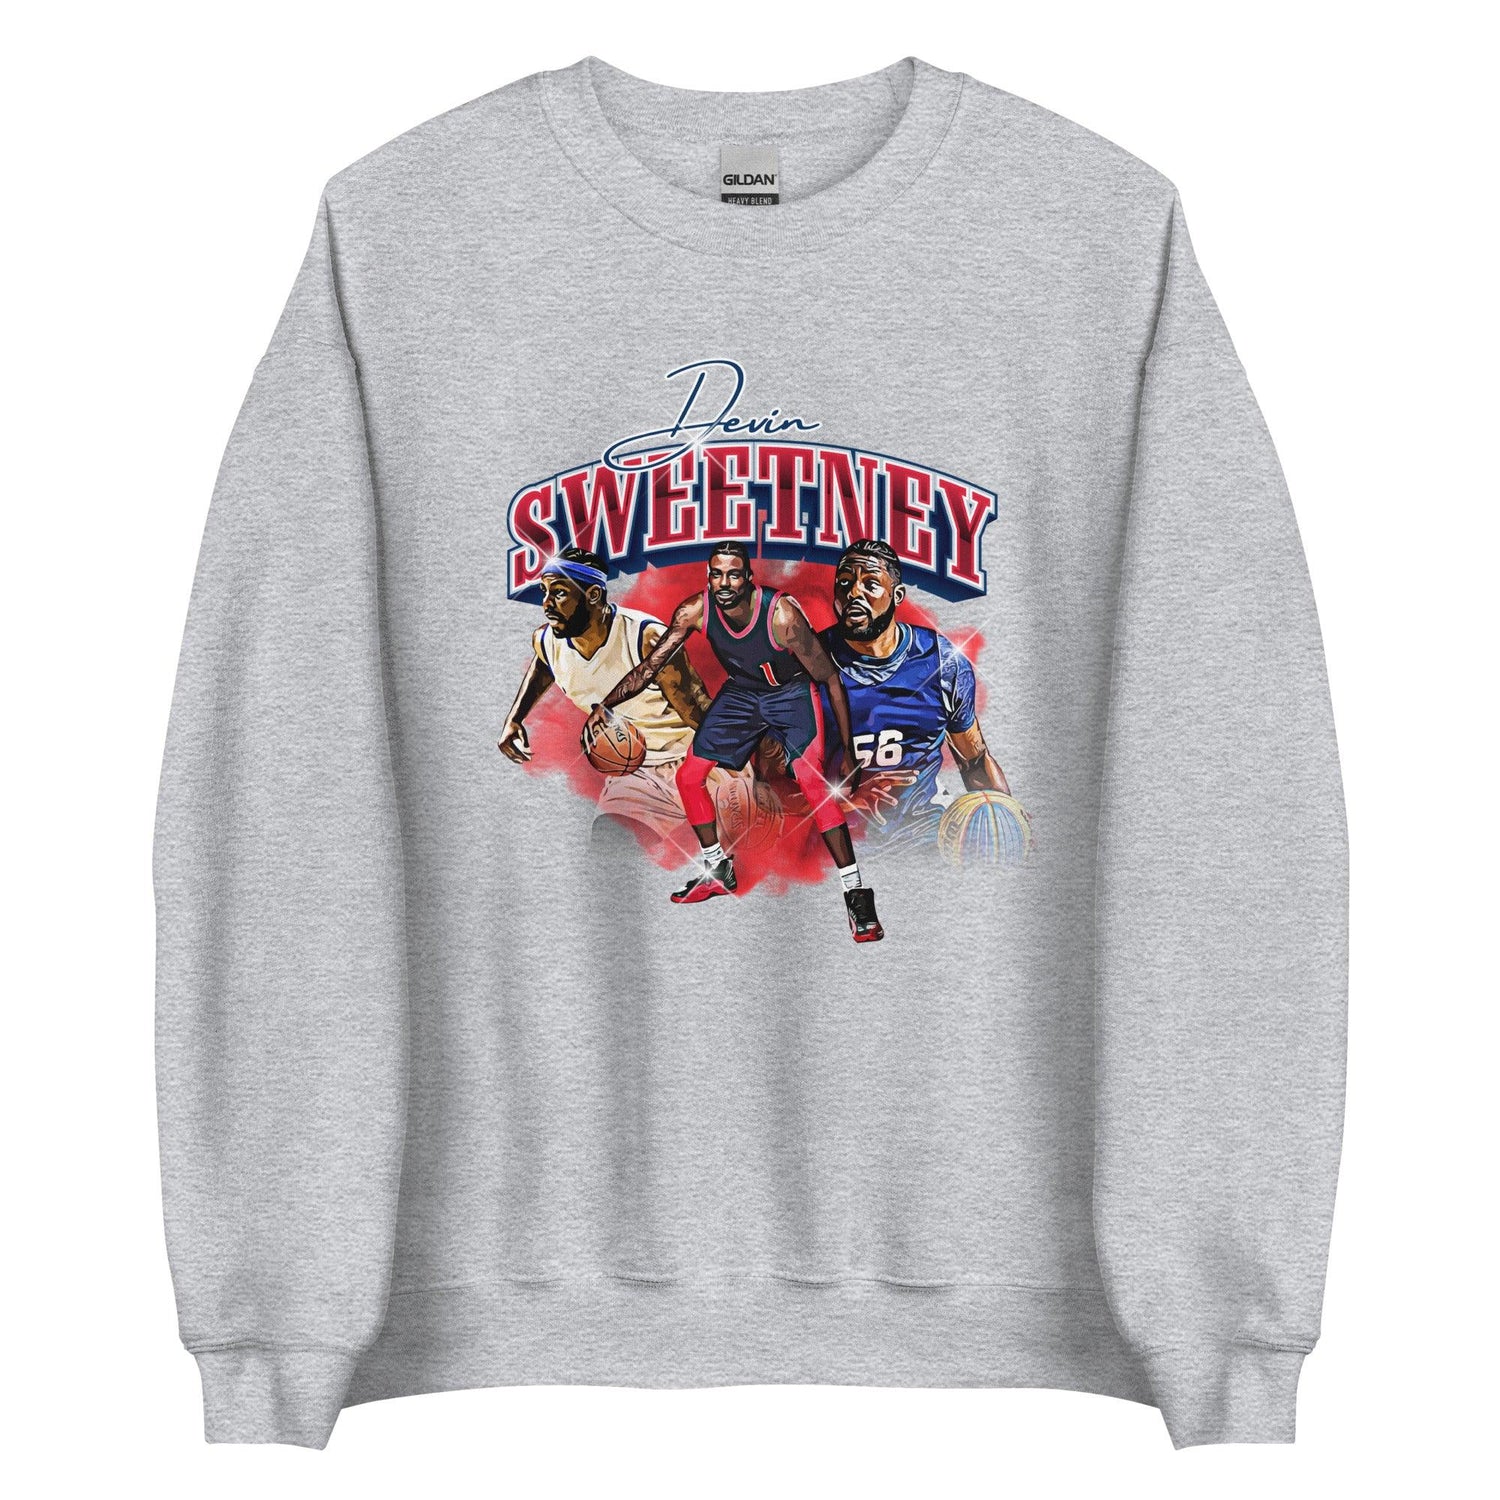 Devin Sweetney "Legacy" Sweatshirt - Fan Arch